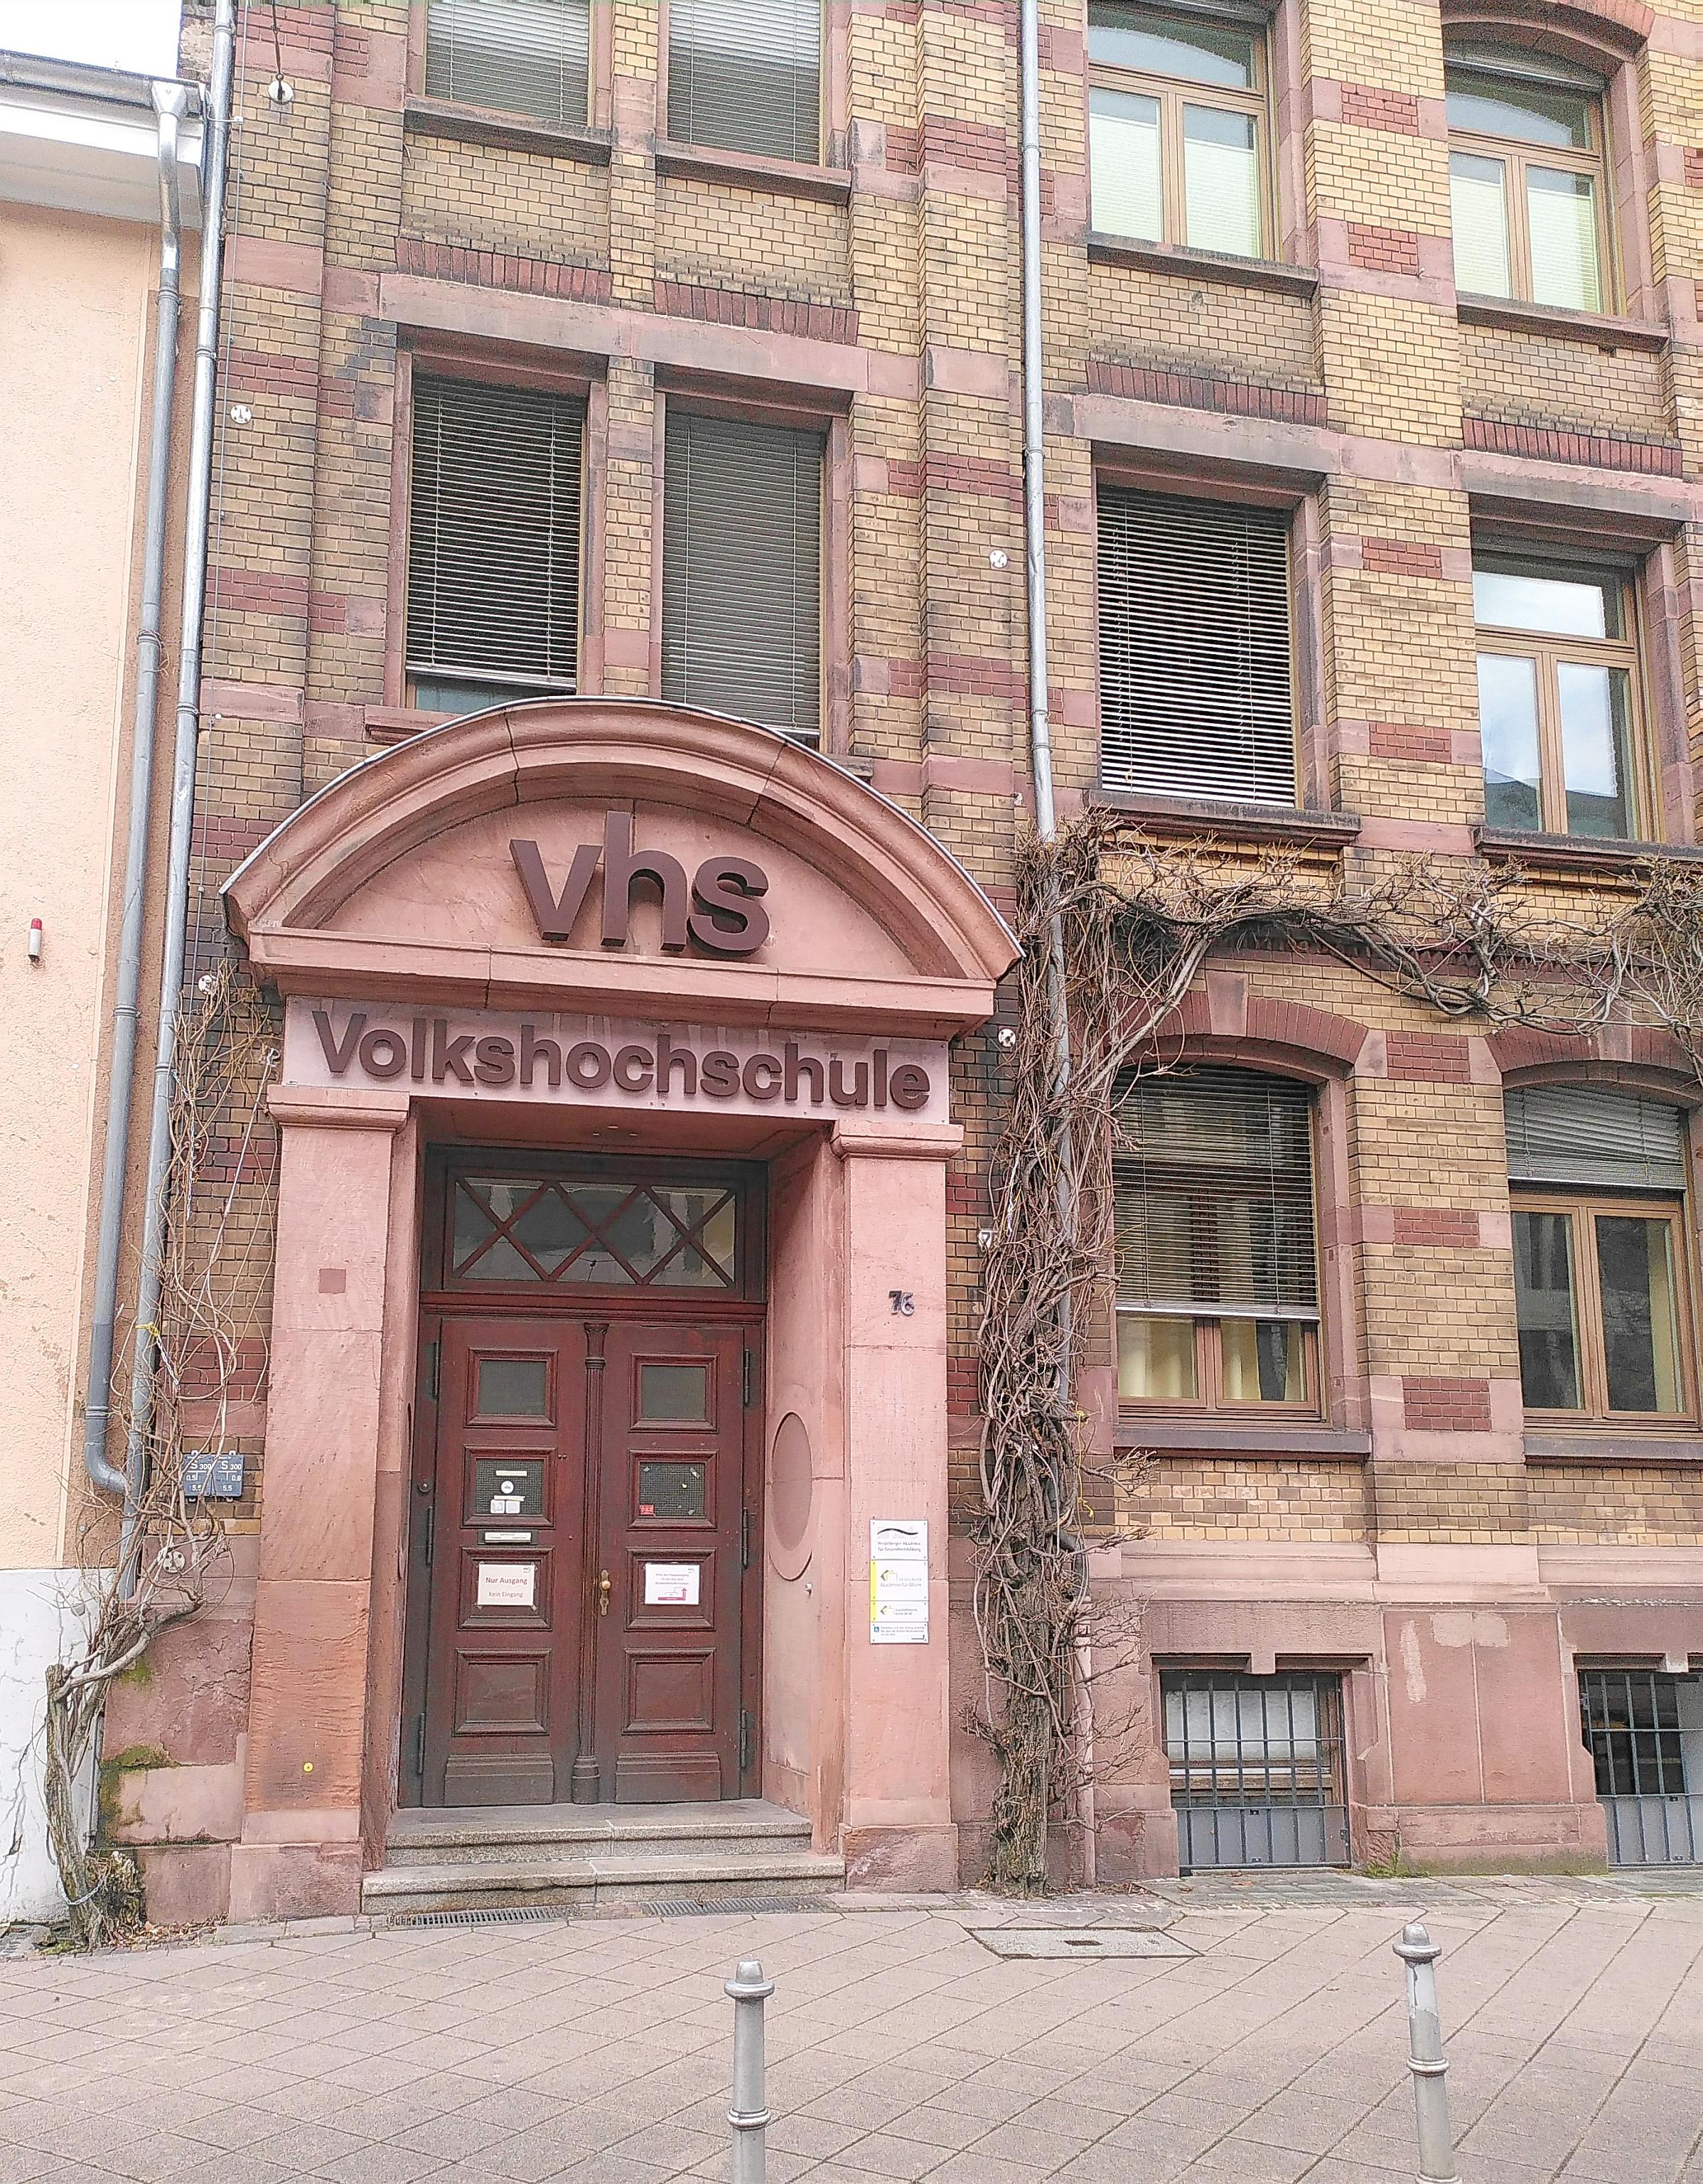 2022 Volkshochschule Heidelberg 04 Eingang.jpg